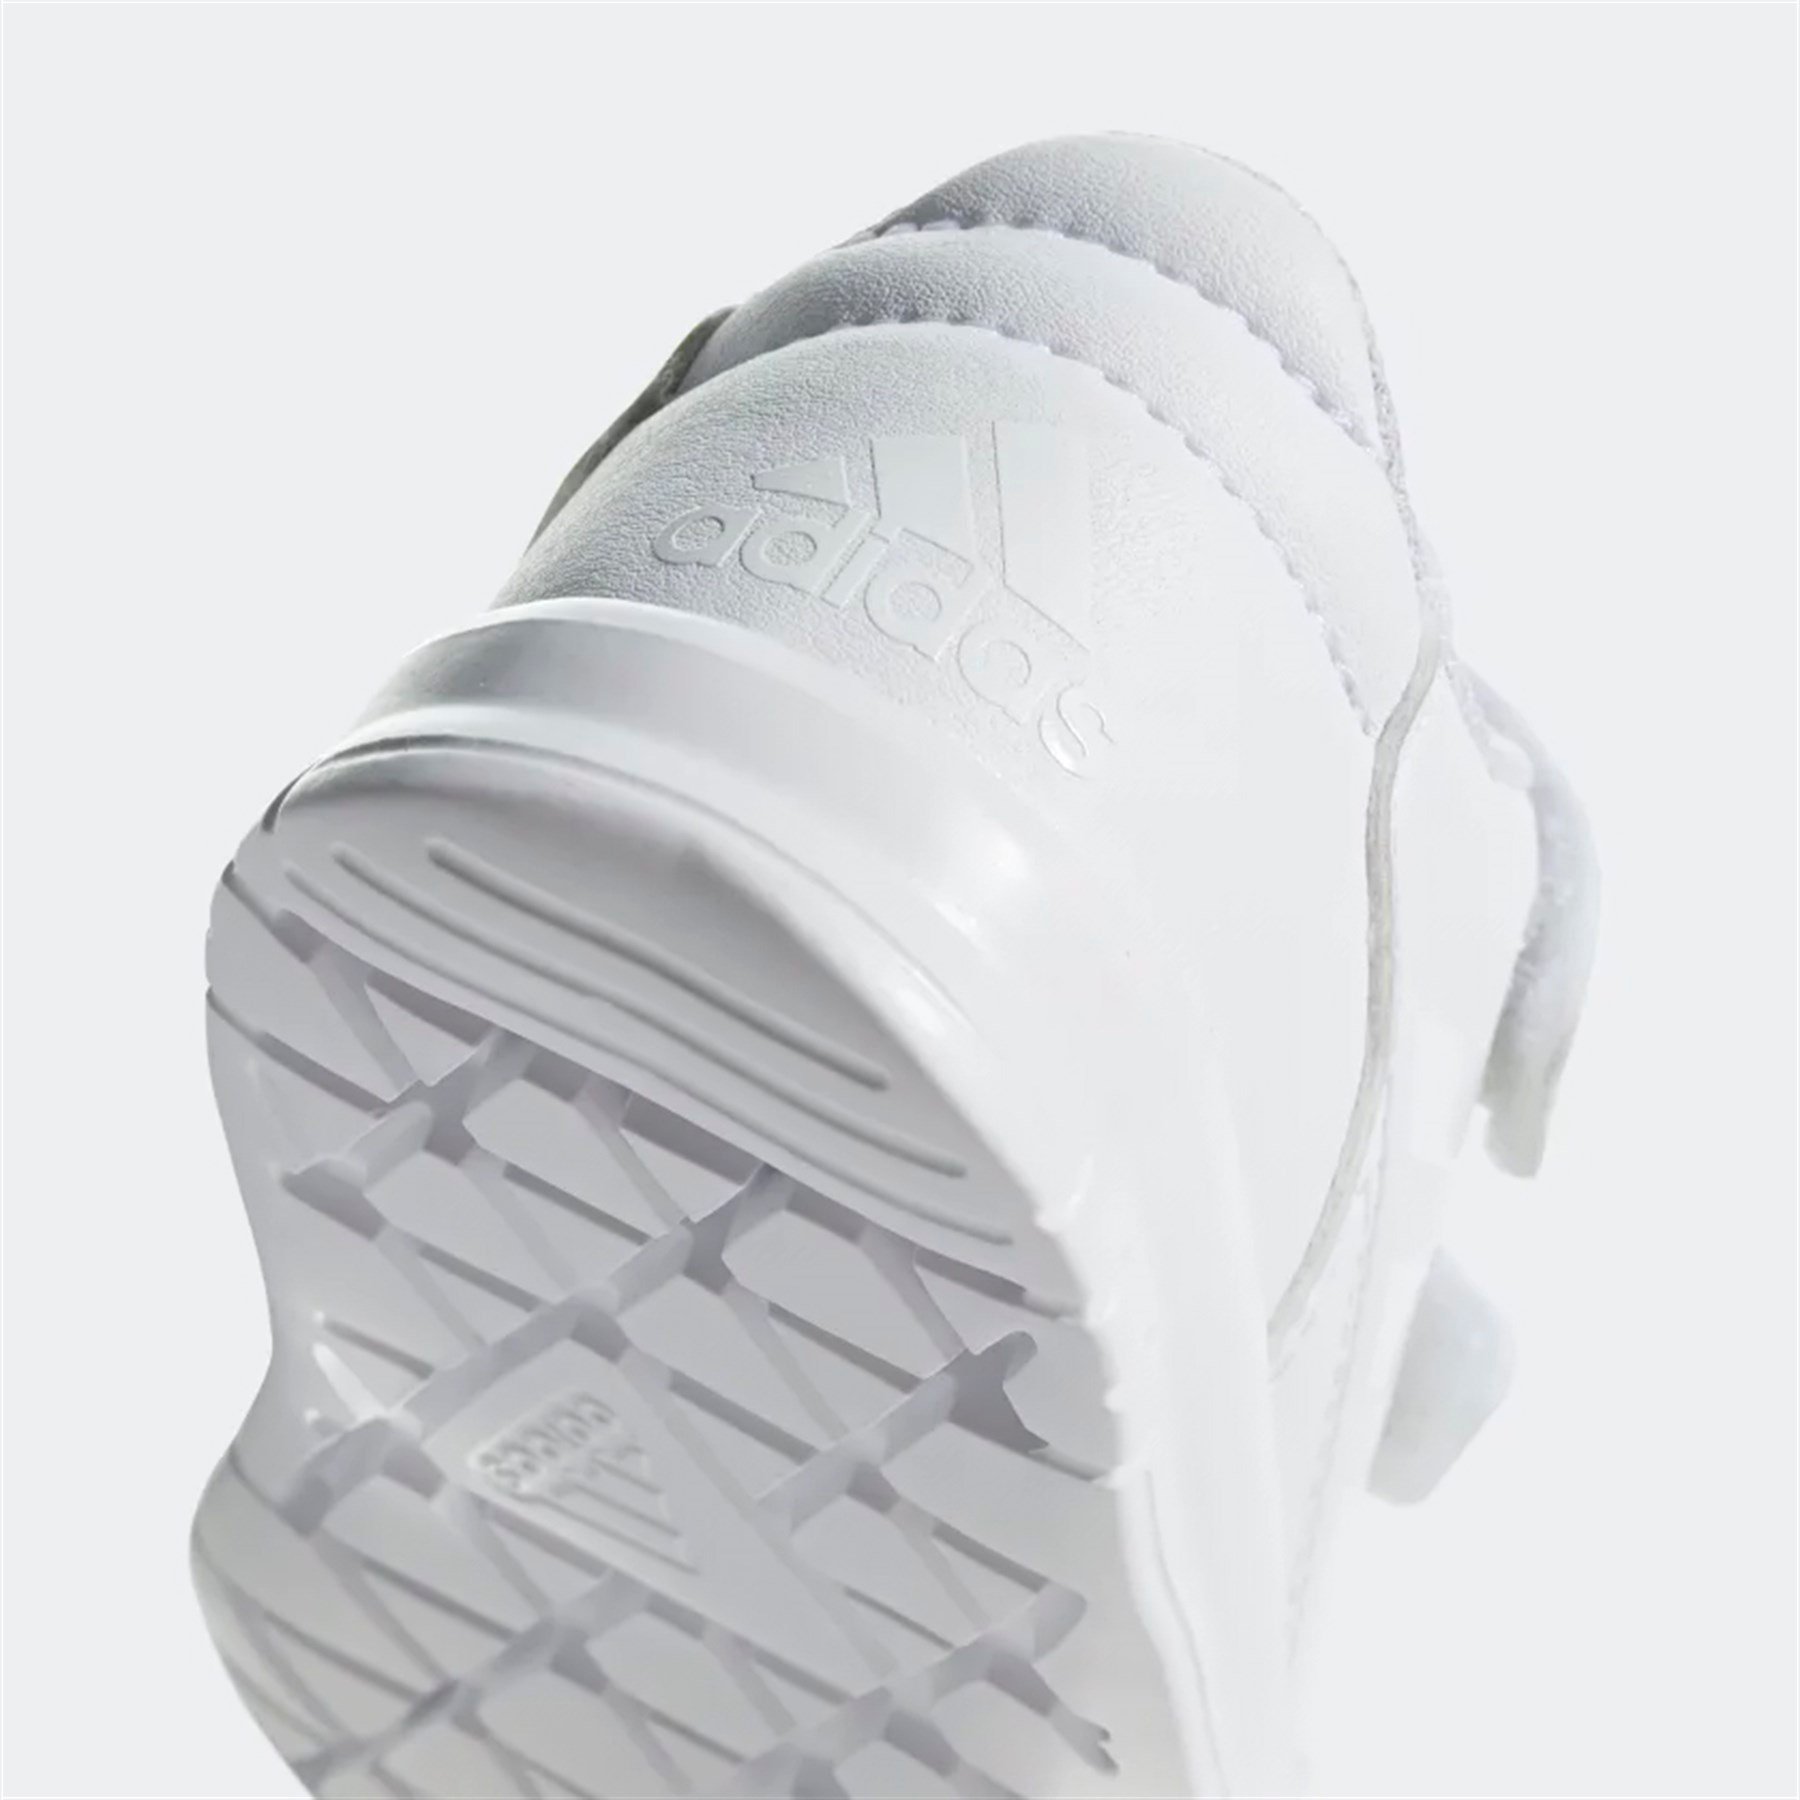 Adidas Bebek Koşu - Yürüyüş Spor Ayakkabı D96848 Altasport Cf I